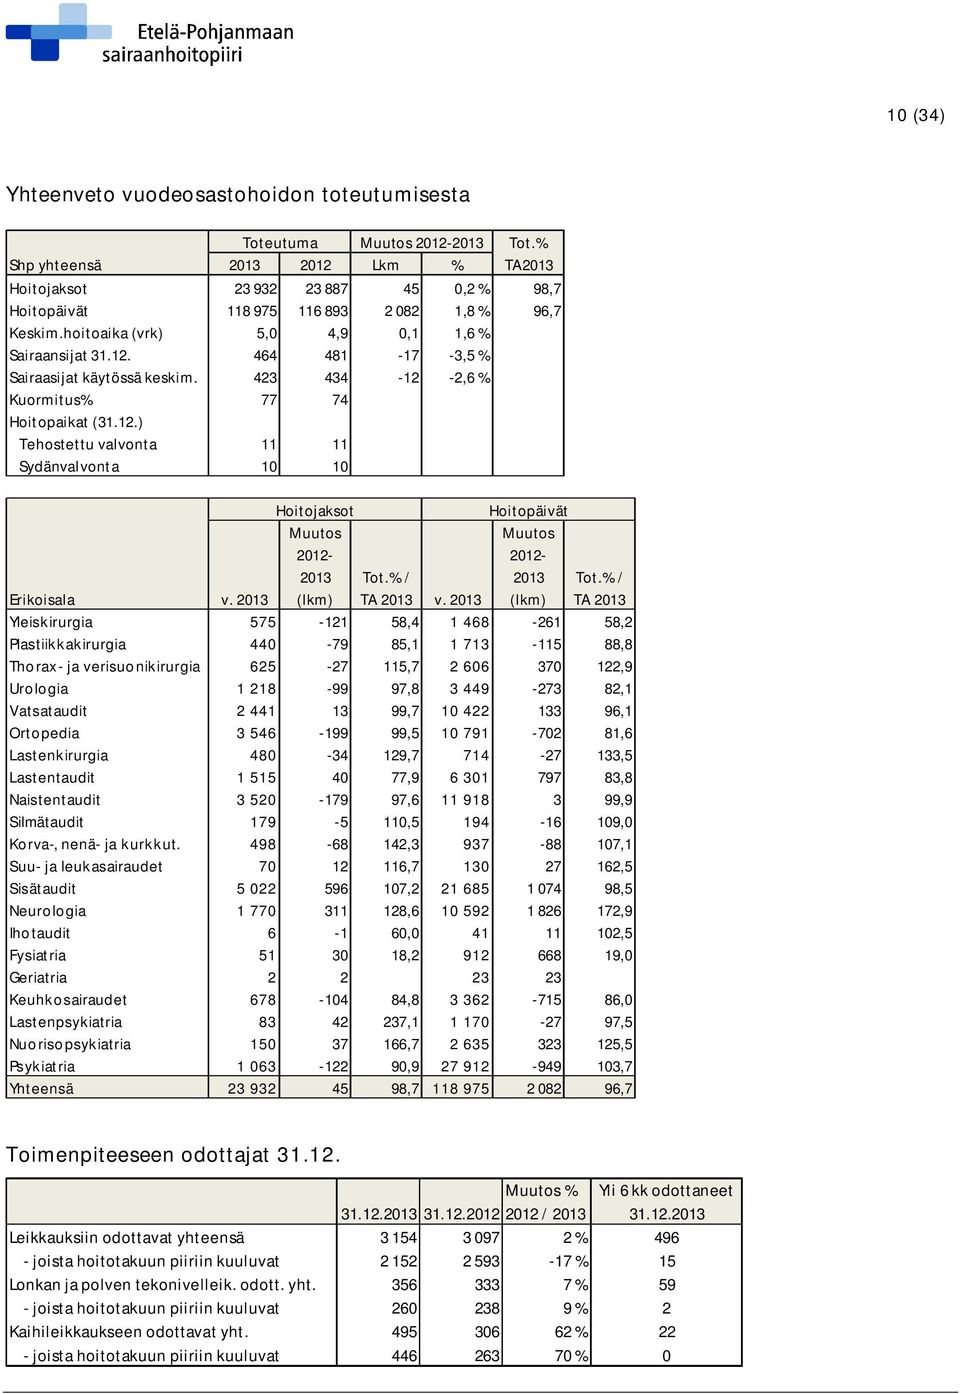 423 434-12 -2,6 % Kuormitus% 77 74 Hoitopaikat (31.12.) Tehostettu valvonta 11 11 Sydänvalvonta 10 10 Hoitojaksot Muutos 2012-2013 (lkm) Hoitopäivät Muutos 2012-2013 (lkm) Tot.% / Tot.